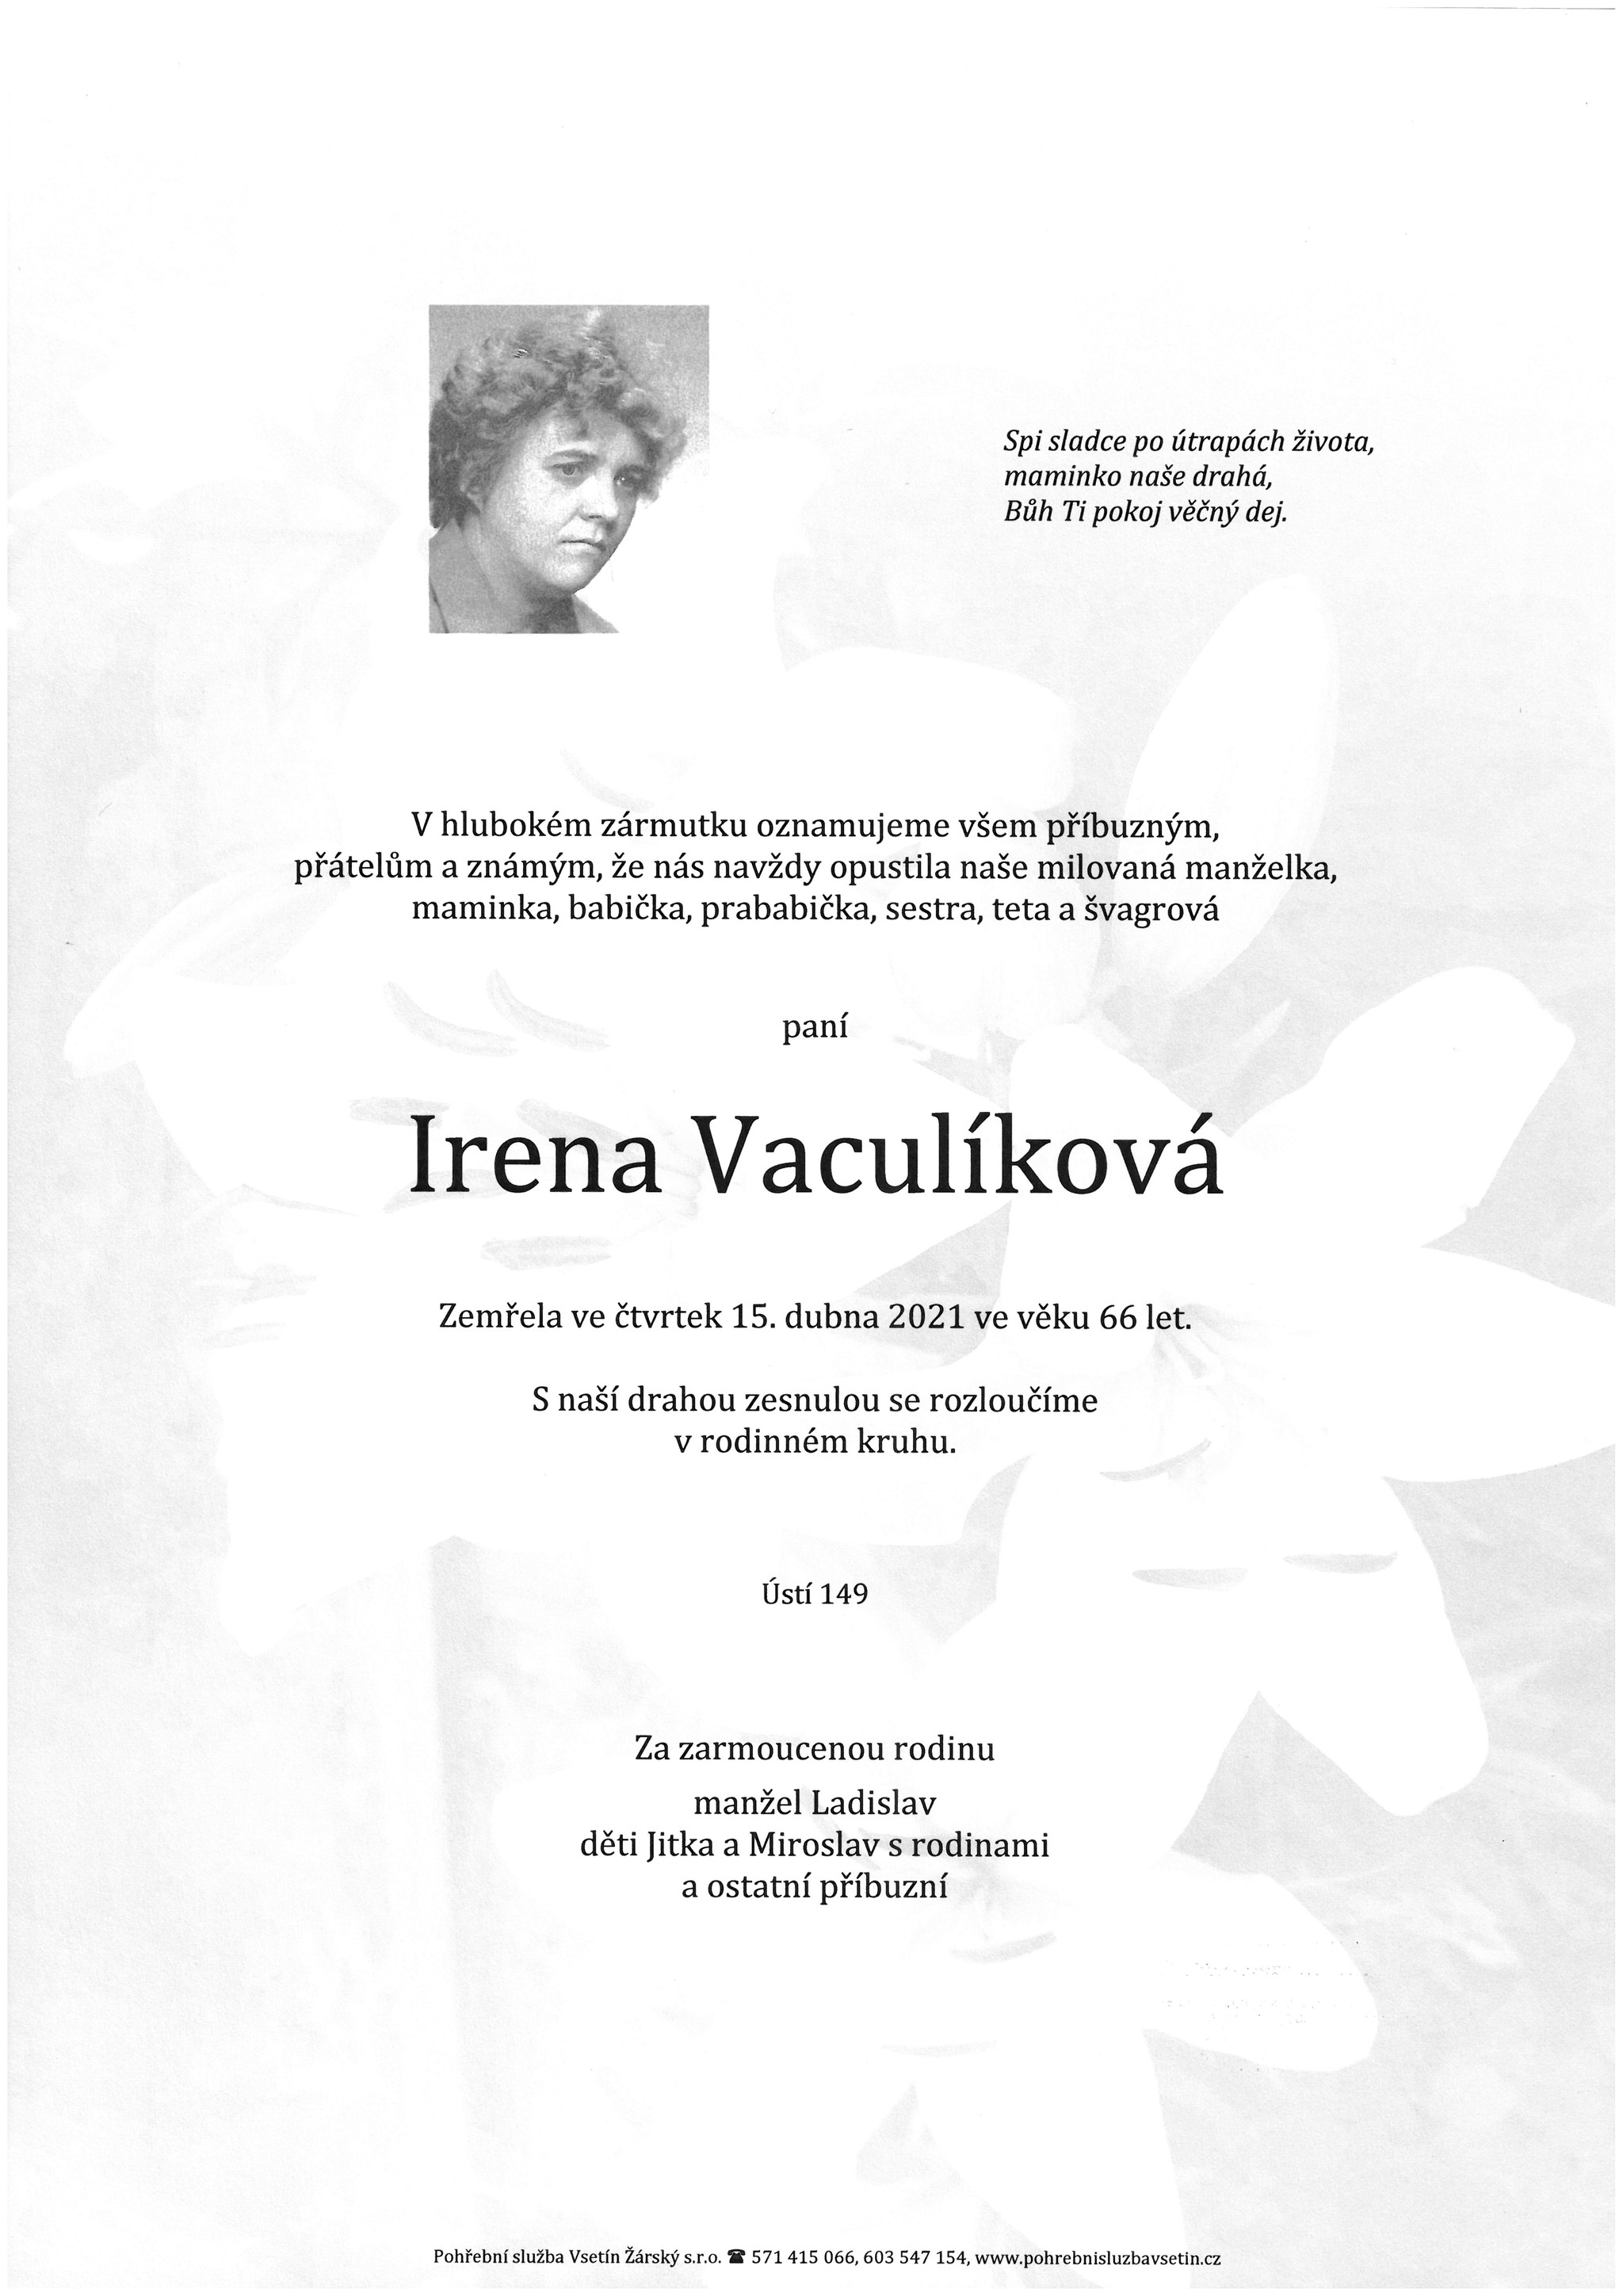 Irena Vaculíková